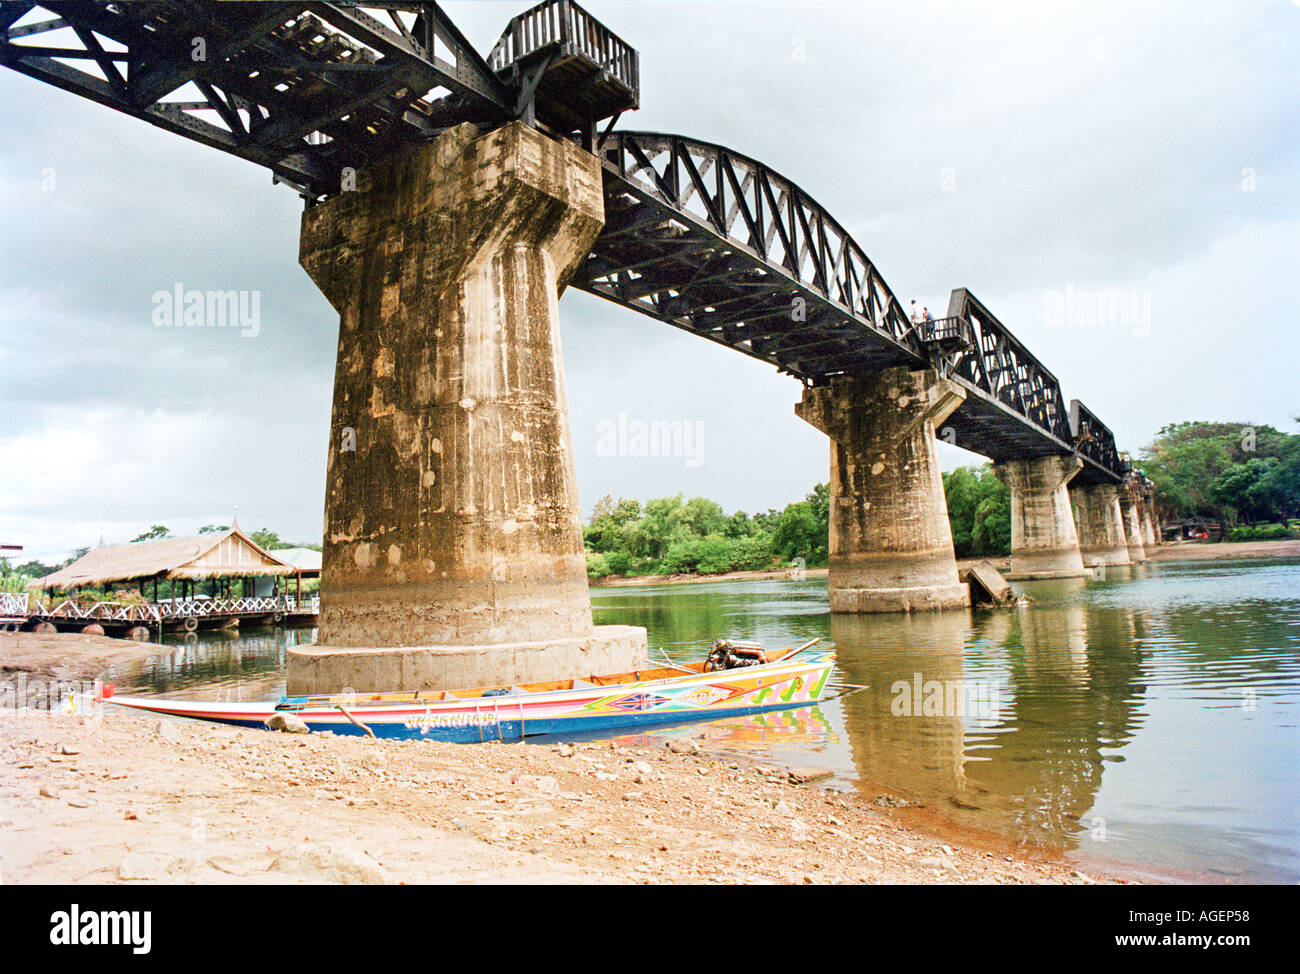 Le pont sur la rivière Kwai dans la ville de Kanchanaburi en Thaïlande a été construit par les prisonniers alliés durant la Seconde Guerre mondiale Banque D'Images